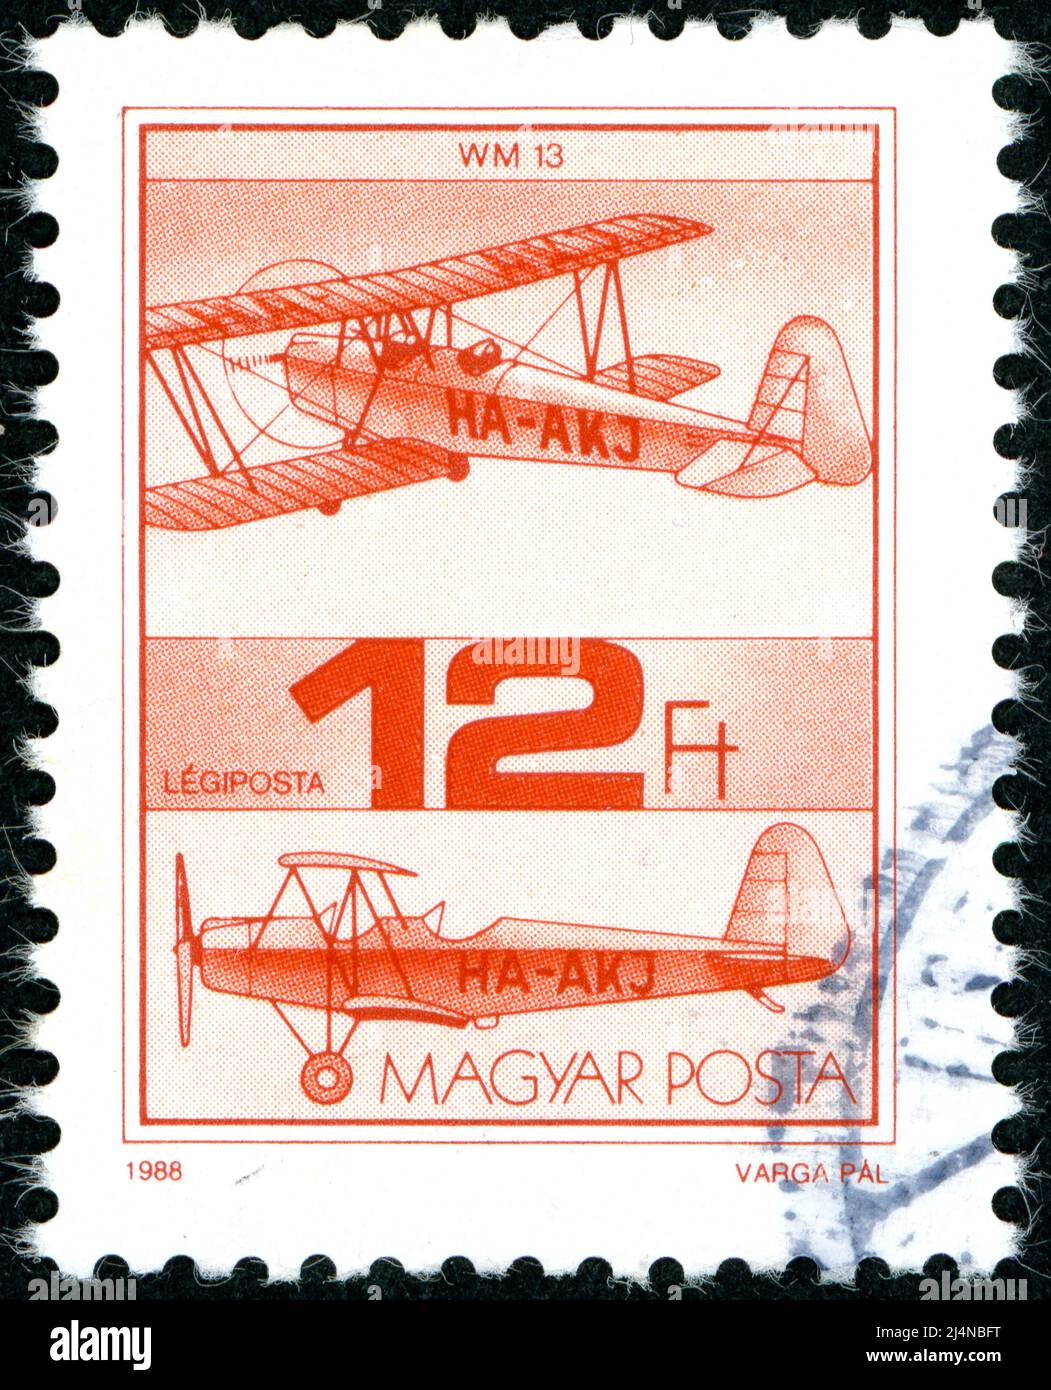 HONGRIE - VERS 1988: Timbre-poste imprimé en Hongrie, représenté avion d'entraînement biplan Weiss WM-13, vers 1988 Banque D'Images